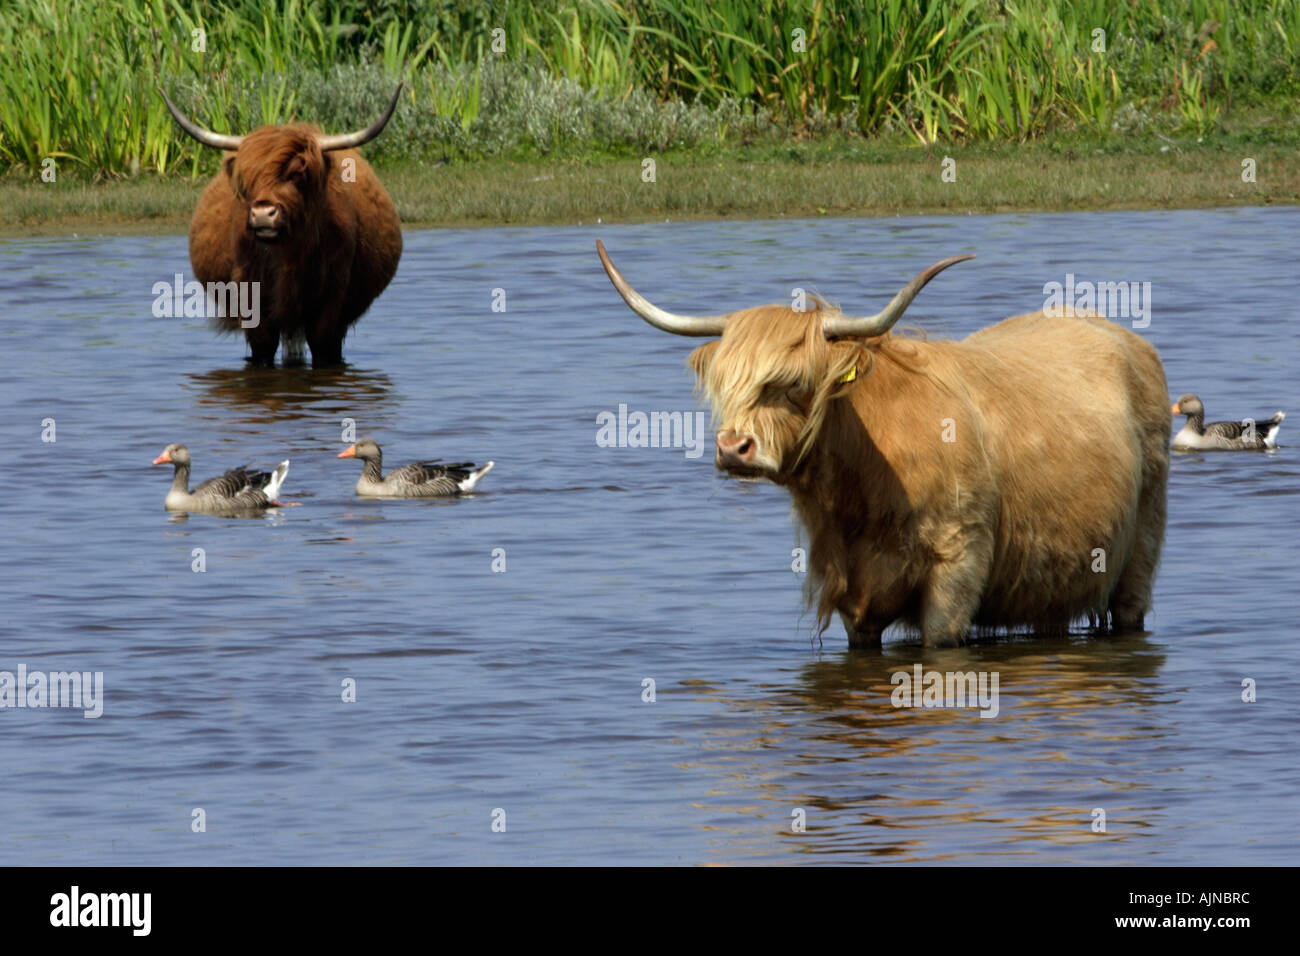 Highland cattle, circuit de refroidissement vers le bas dans le lac avec des oies cendrées, Anser anser, summertime Banque D'Images